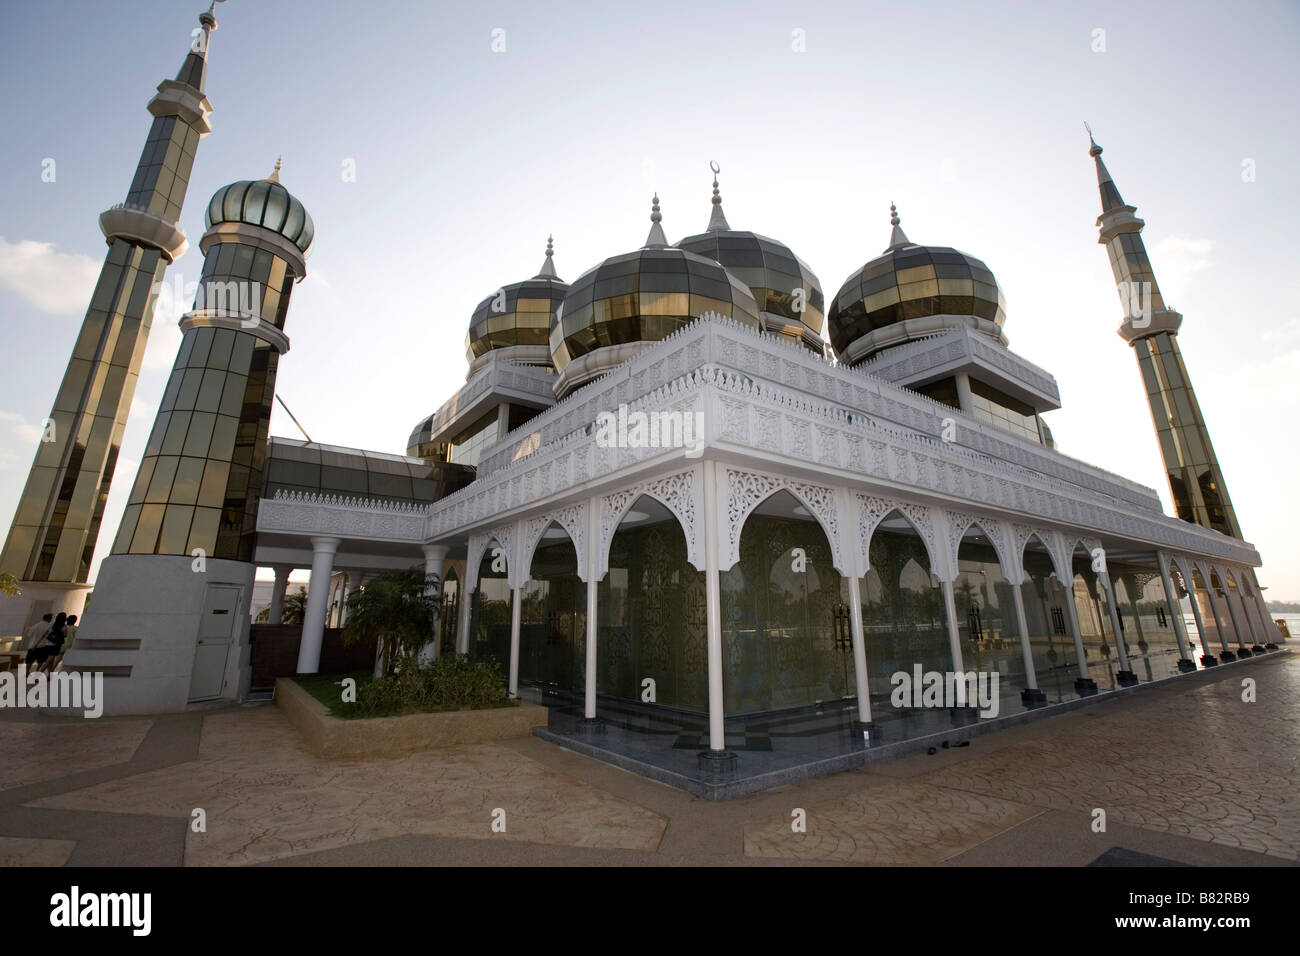 Mosquée de cristal ou Masjid Kristal, Terengganu, Malaisie Banque D'Images